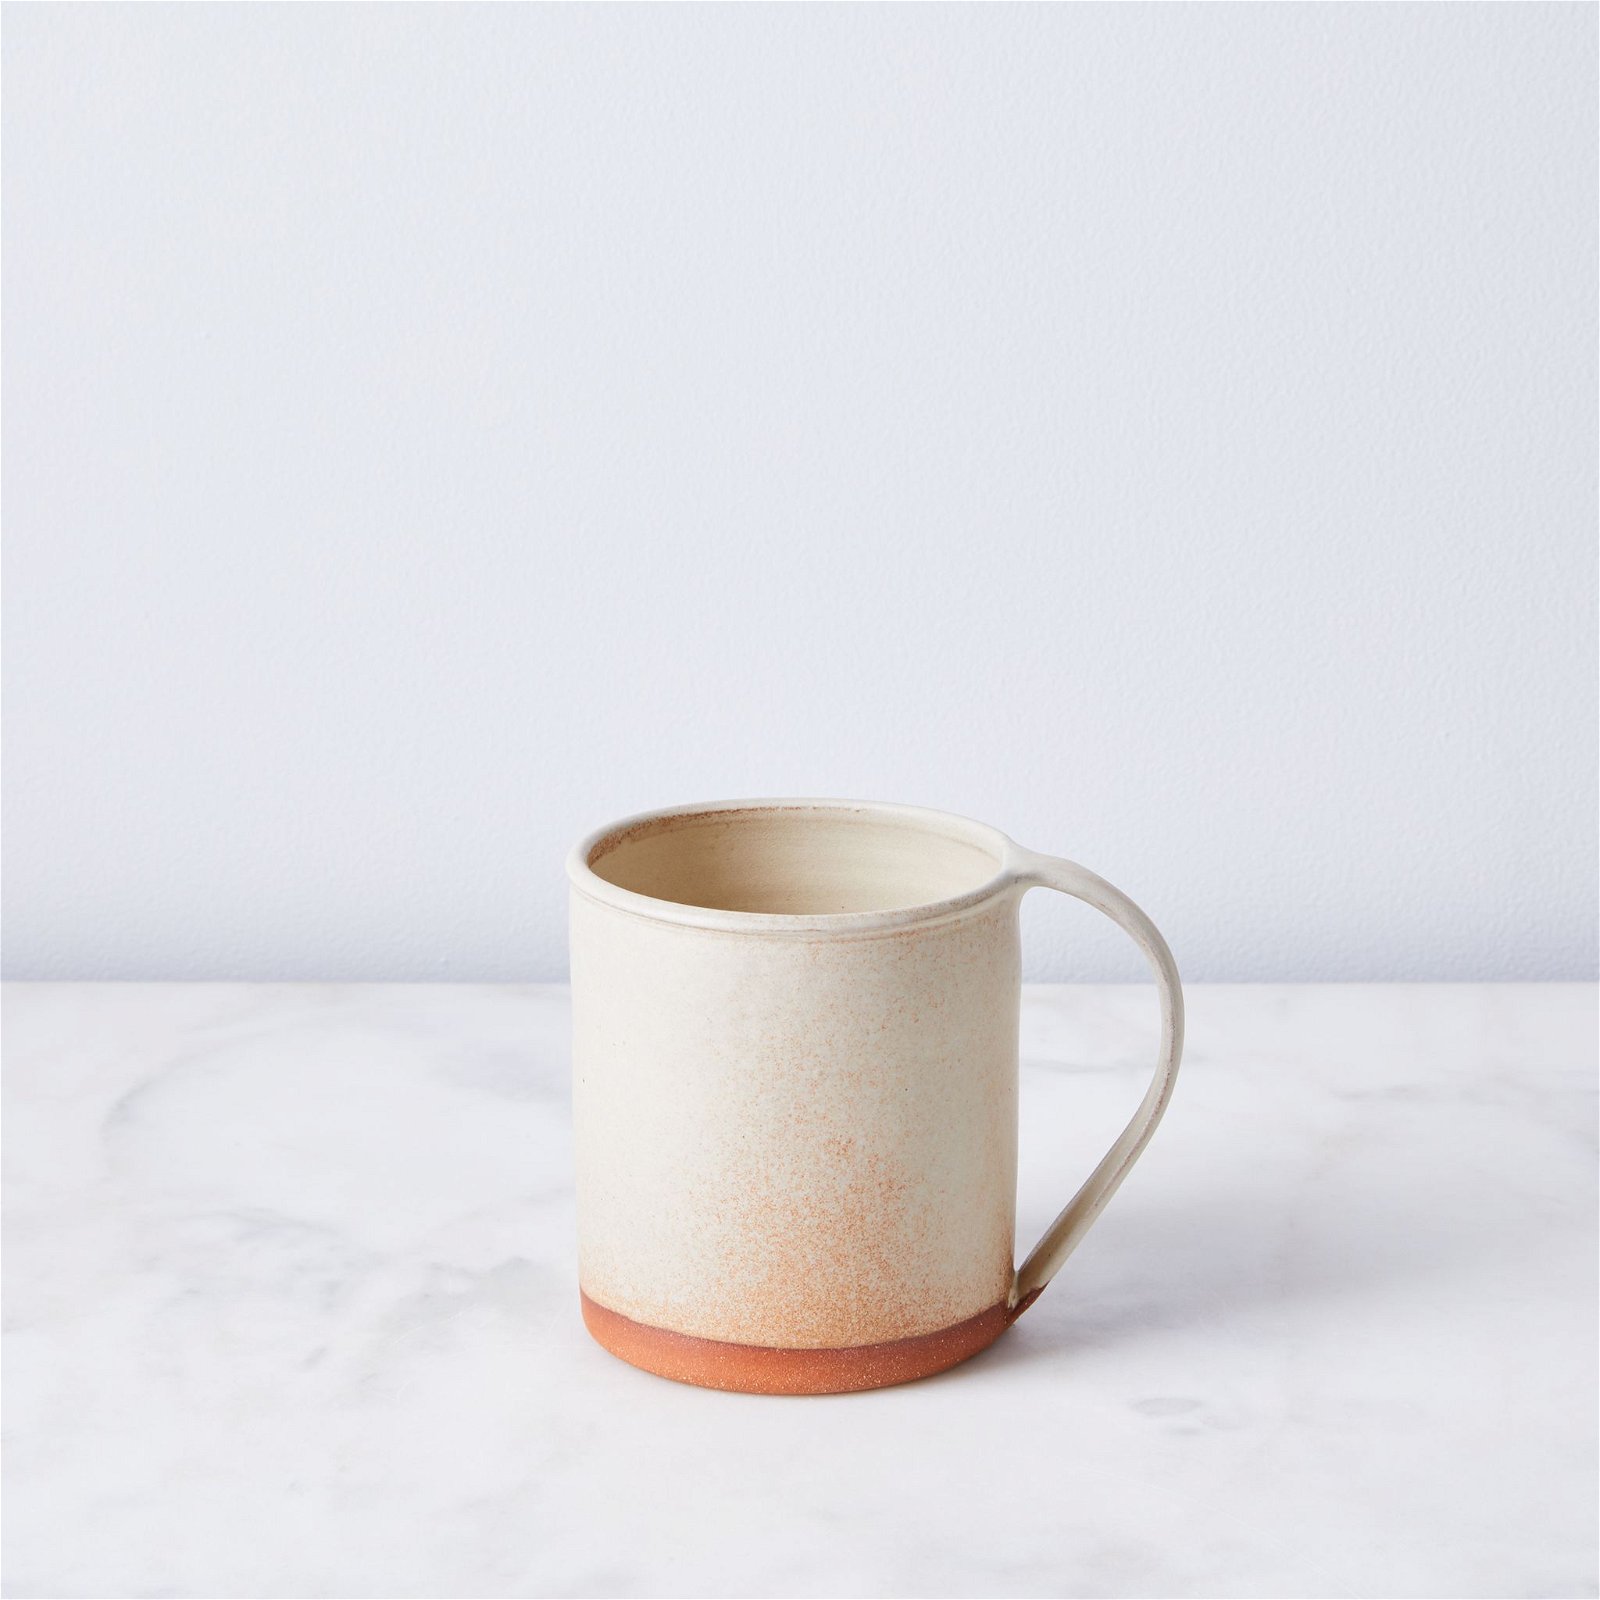 Handthrown Rustic Ceramic Mugs